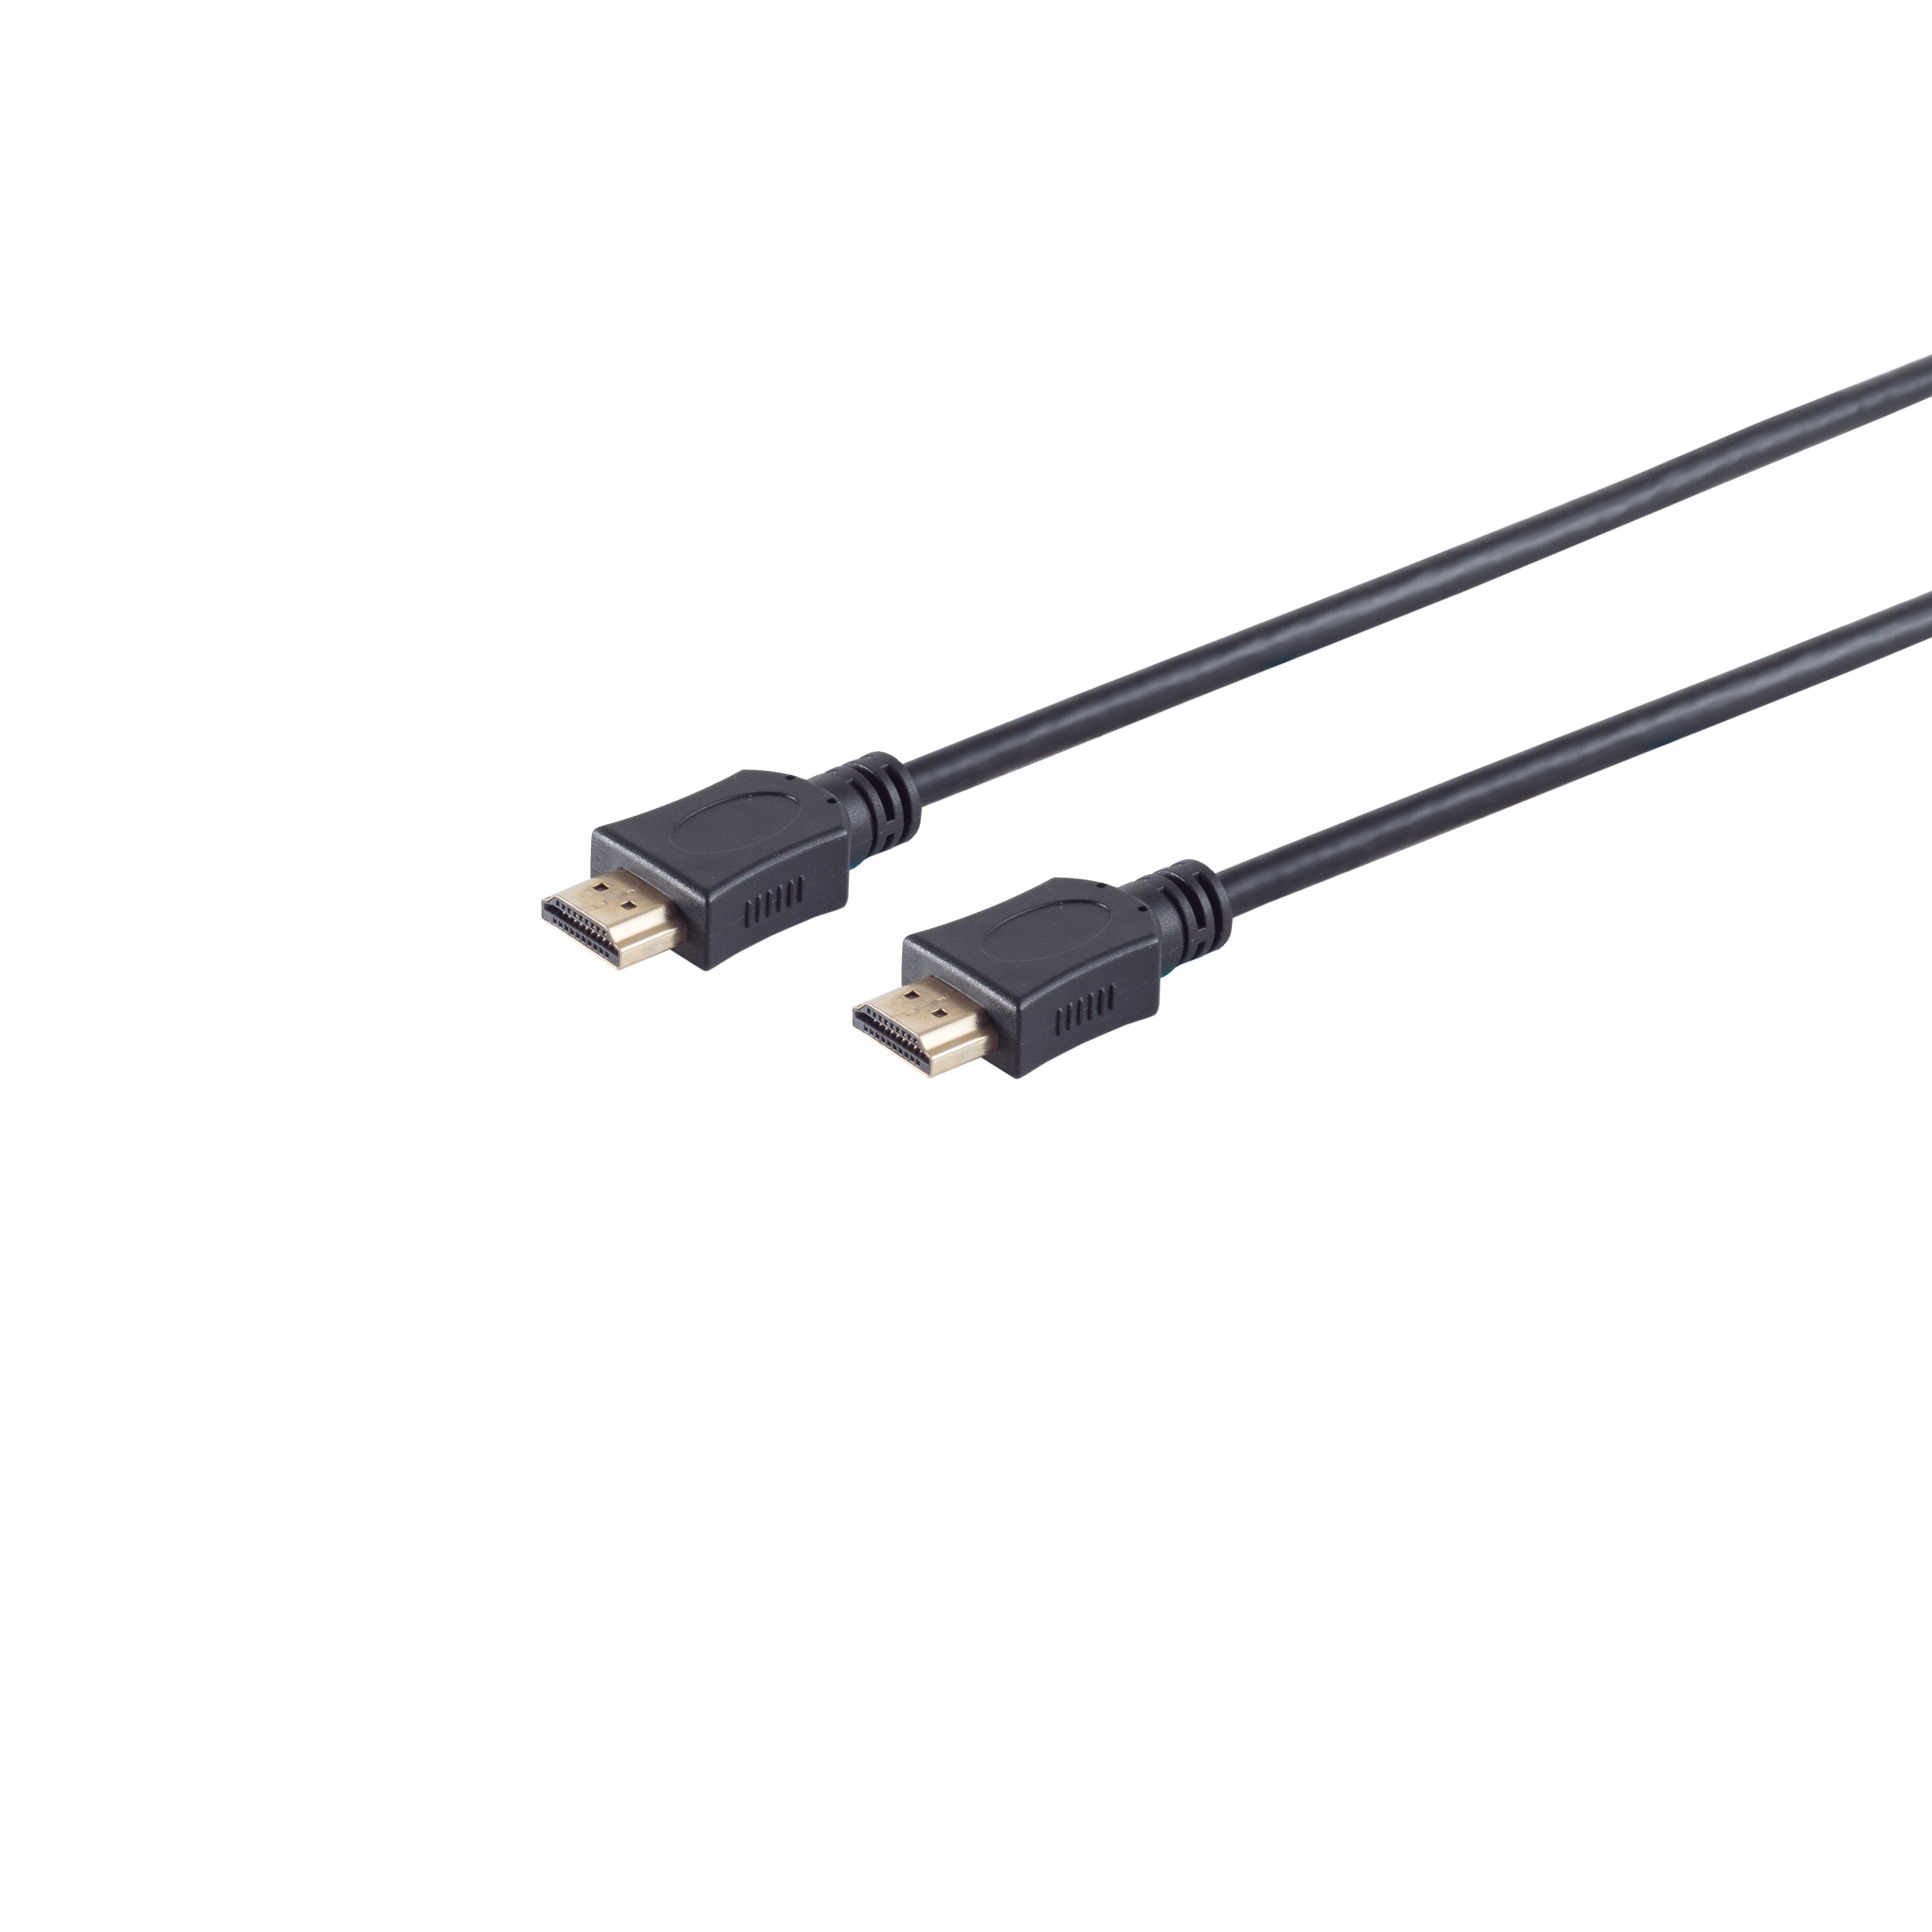 S/CONN MAXIMUM CONNECTIVITY 3m A-Stecker / A-Stecker HDMI HDMI HDMI HEAC verg. Kabel